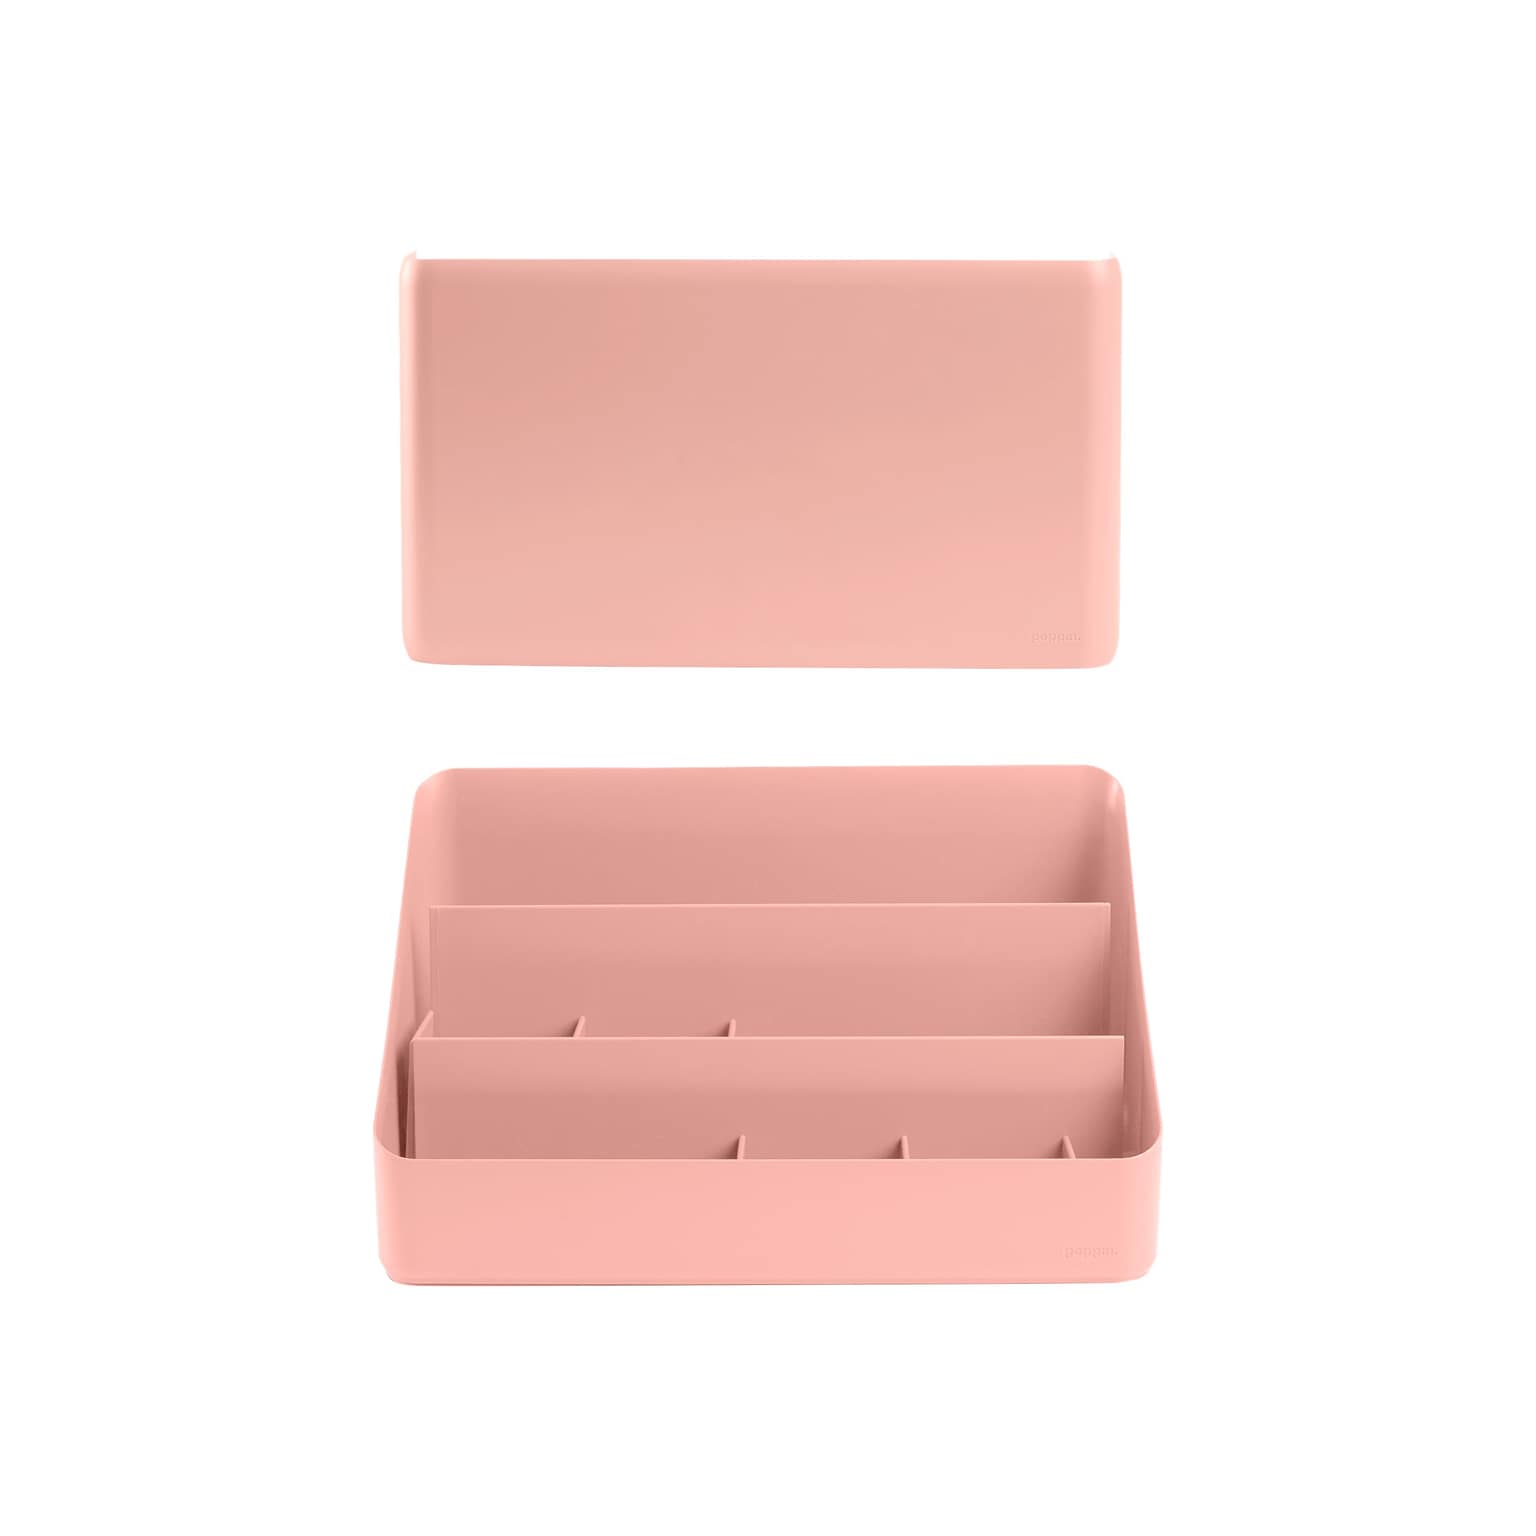 Poppin Polystyrene Wall/Desk Organizer Set, Blush (108022)